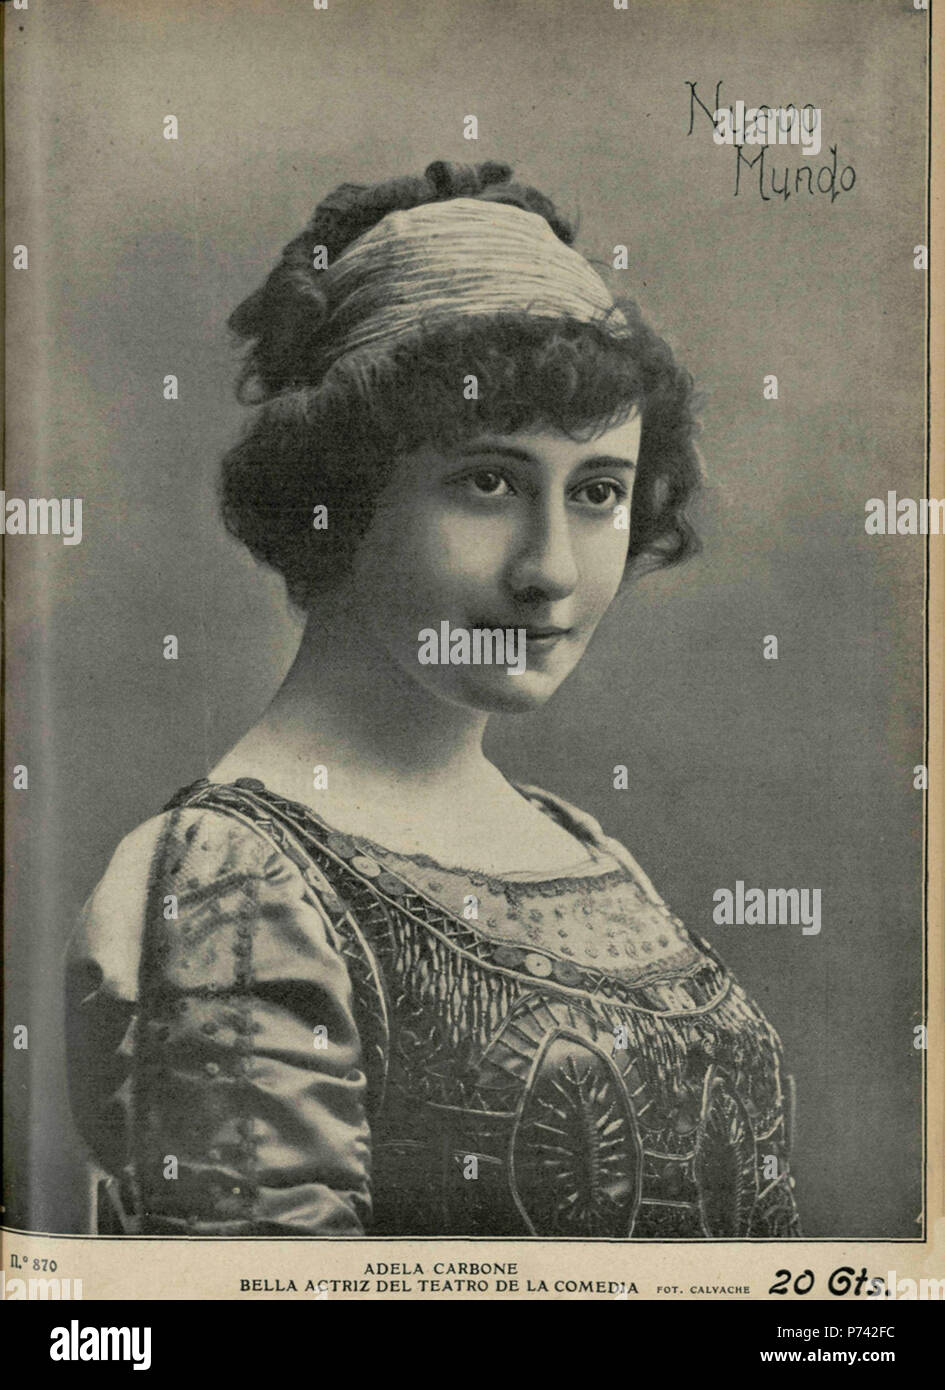 Español: Adela Carbone, bella actriz del Teatro de la Comedia. 8 September 1910 2 1910-09-08, Nuevo Mundo, Adela Carbone, Calvache Stock Photo